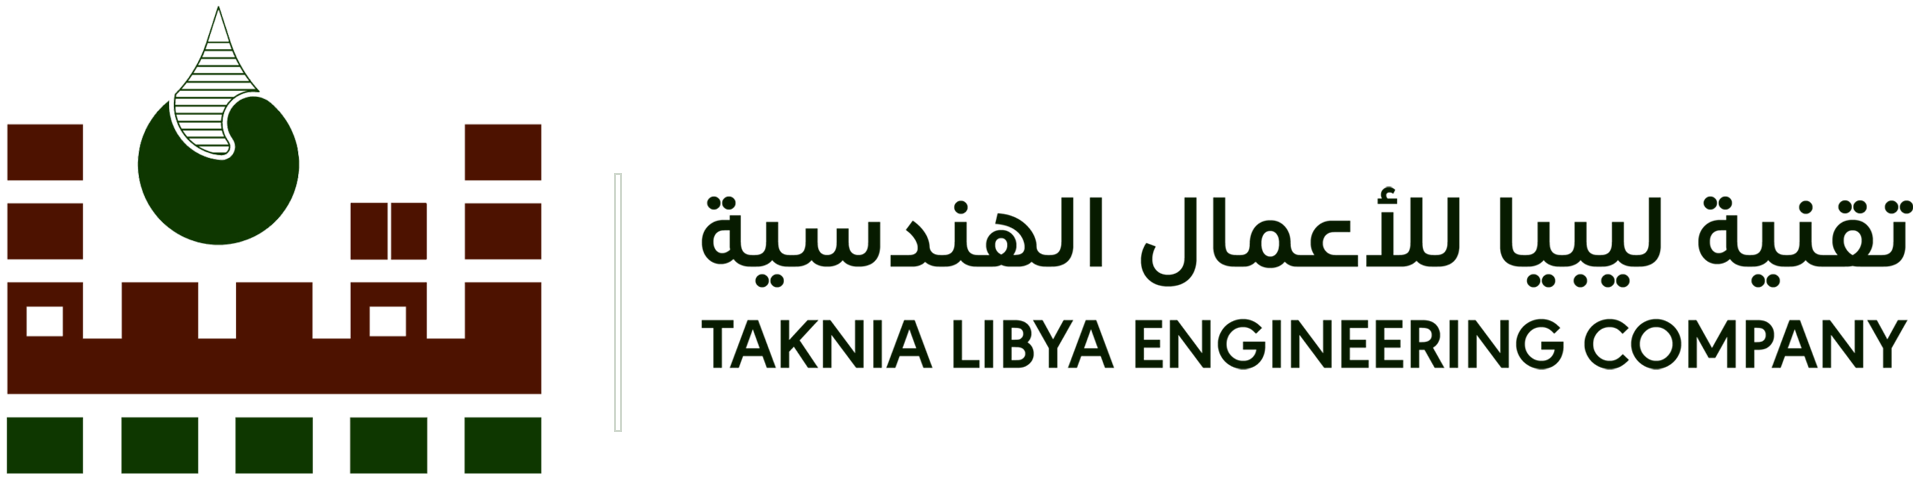 TAKNIA LIBYA ENGINEERING COMPANY